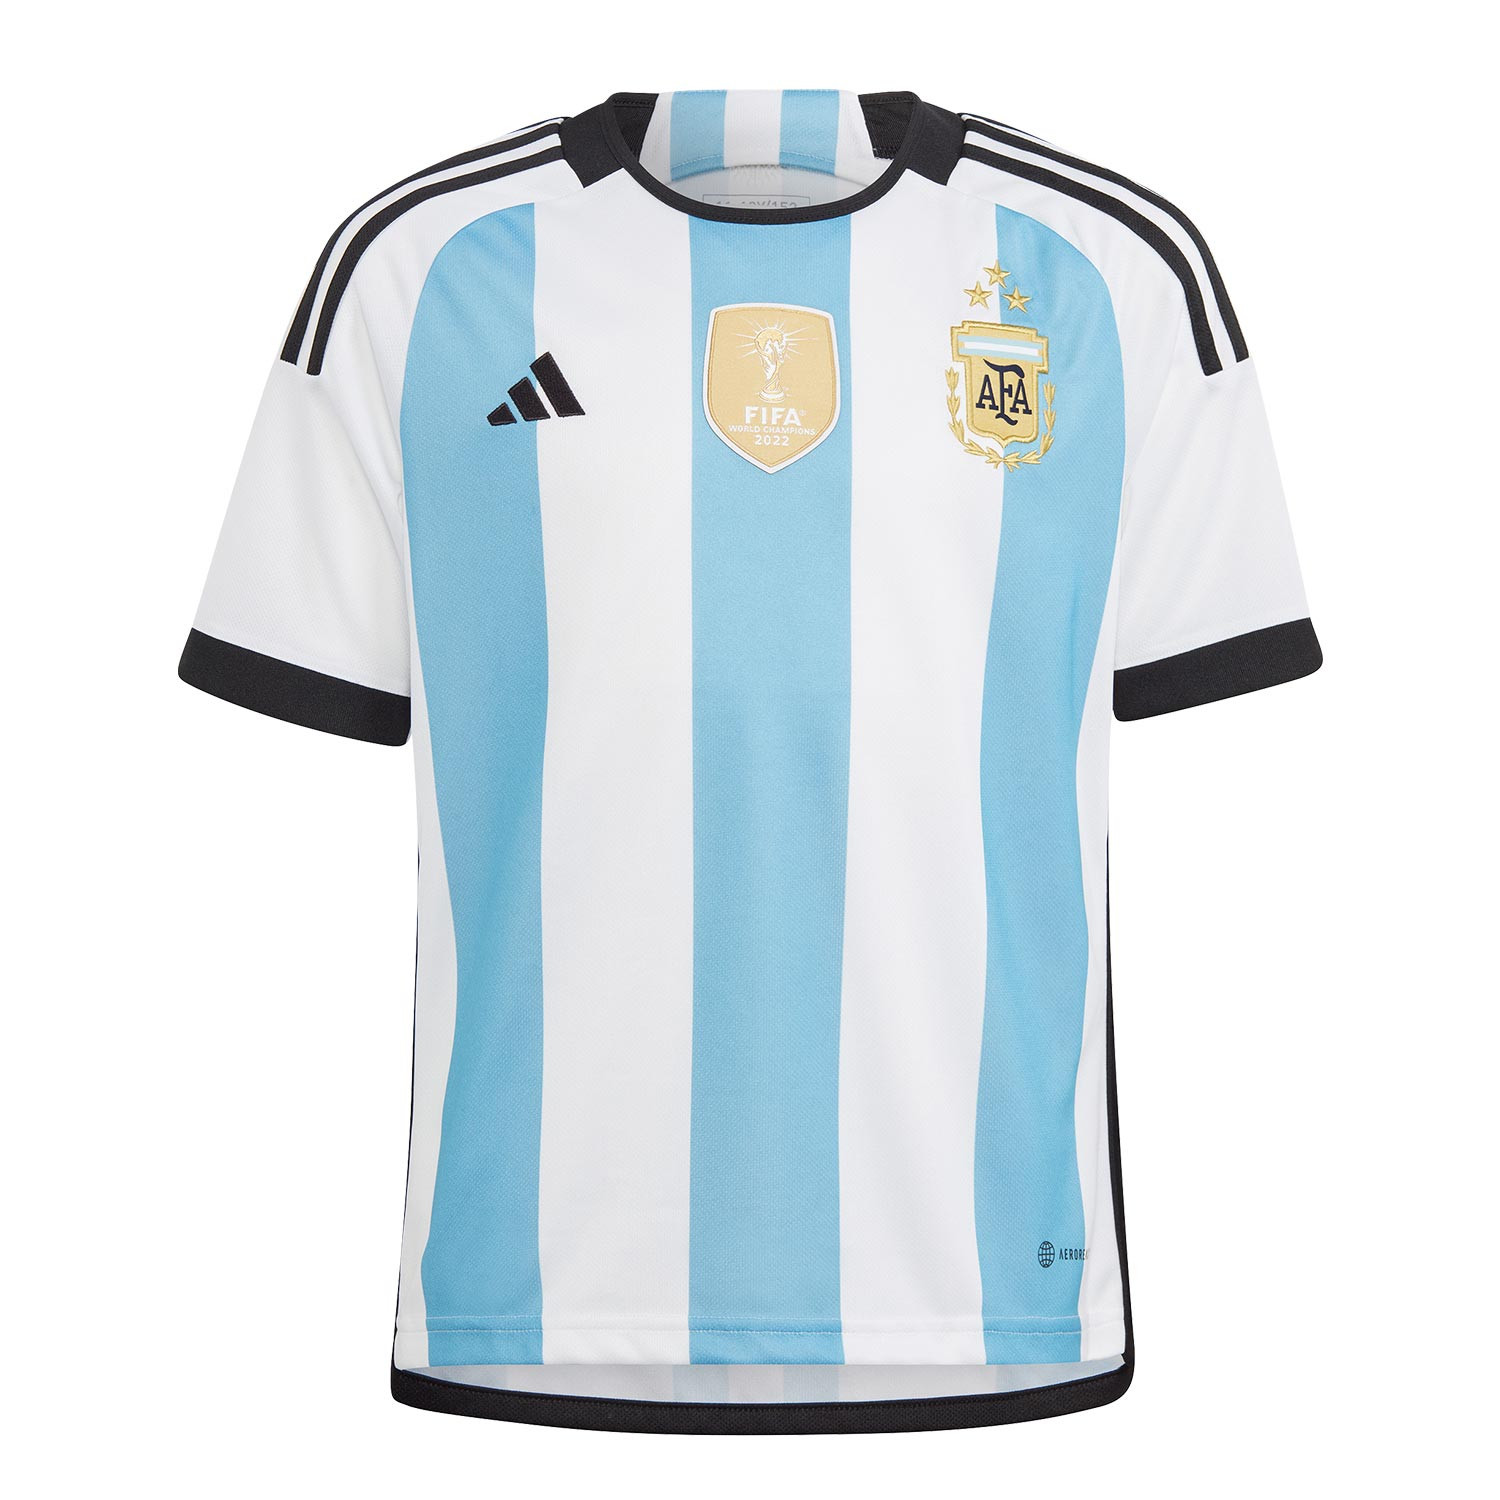 Camiseta adidas Argentina niño 3 estrellas